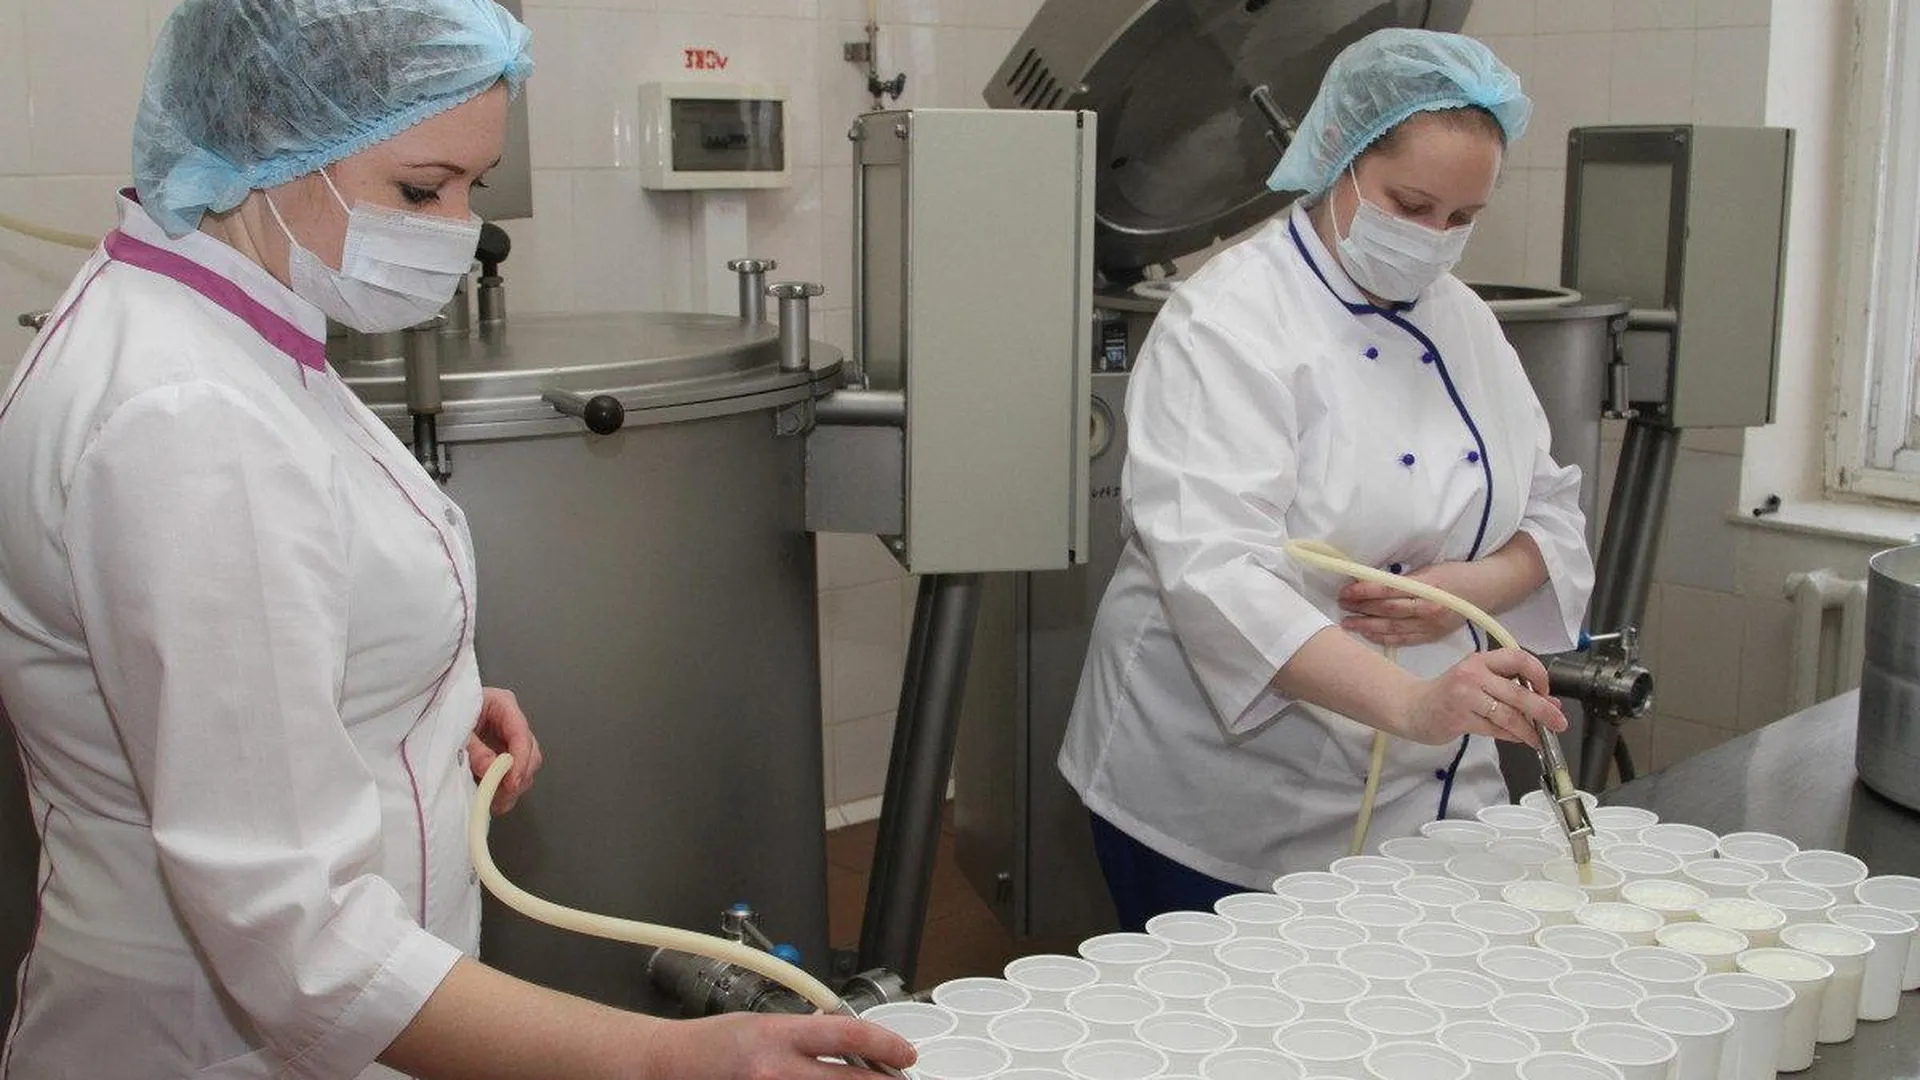 Срок действия рецептов на питание в молочных кухнях Москвы продлили до 3 мес